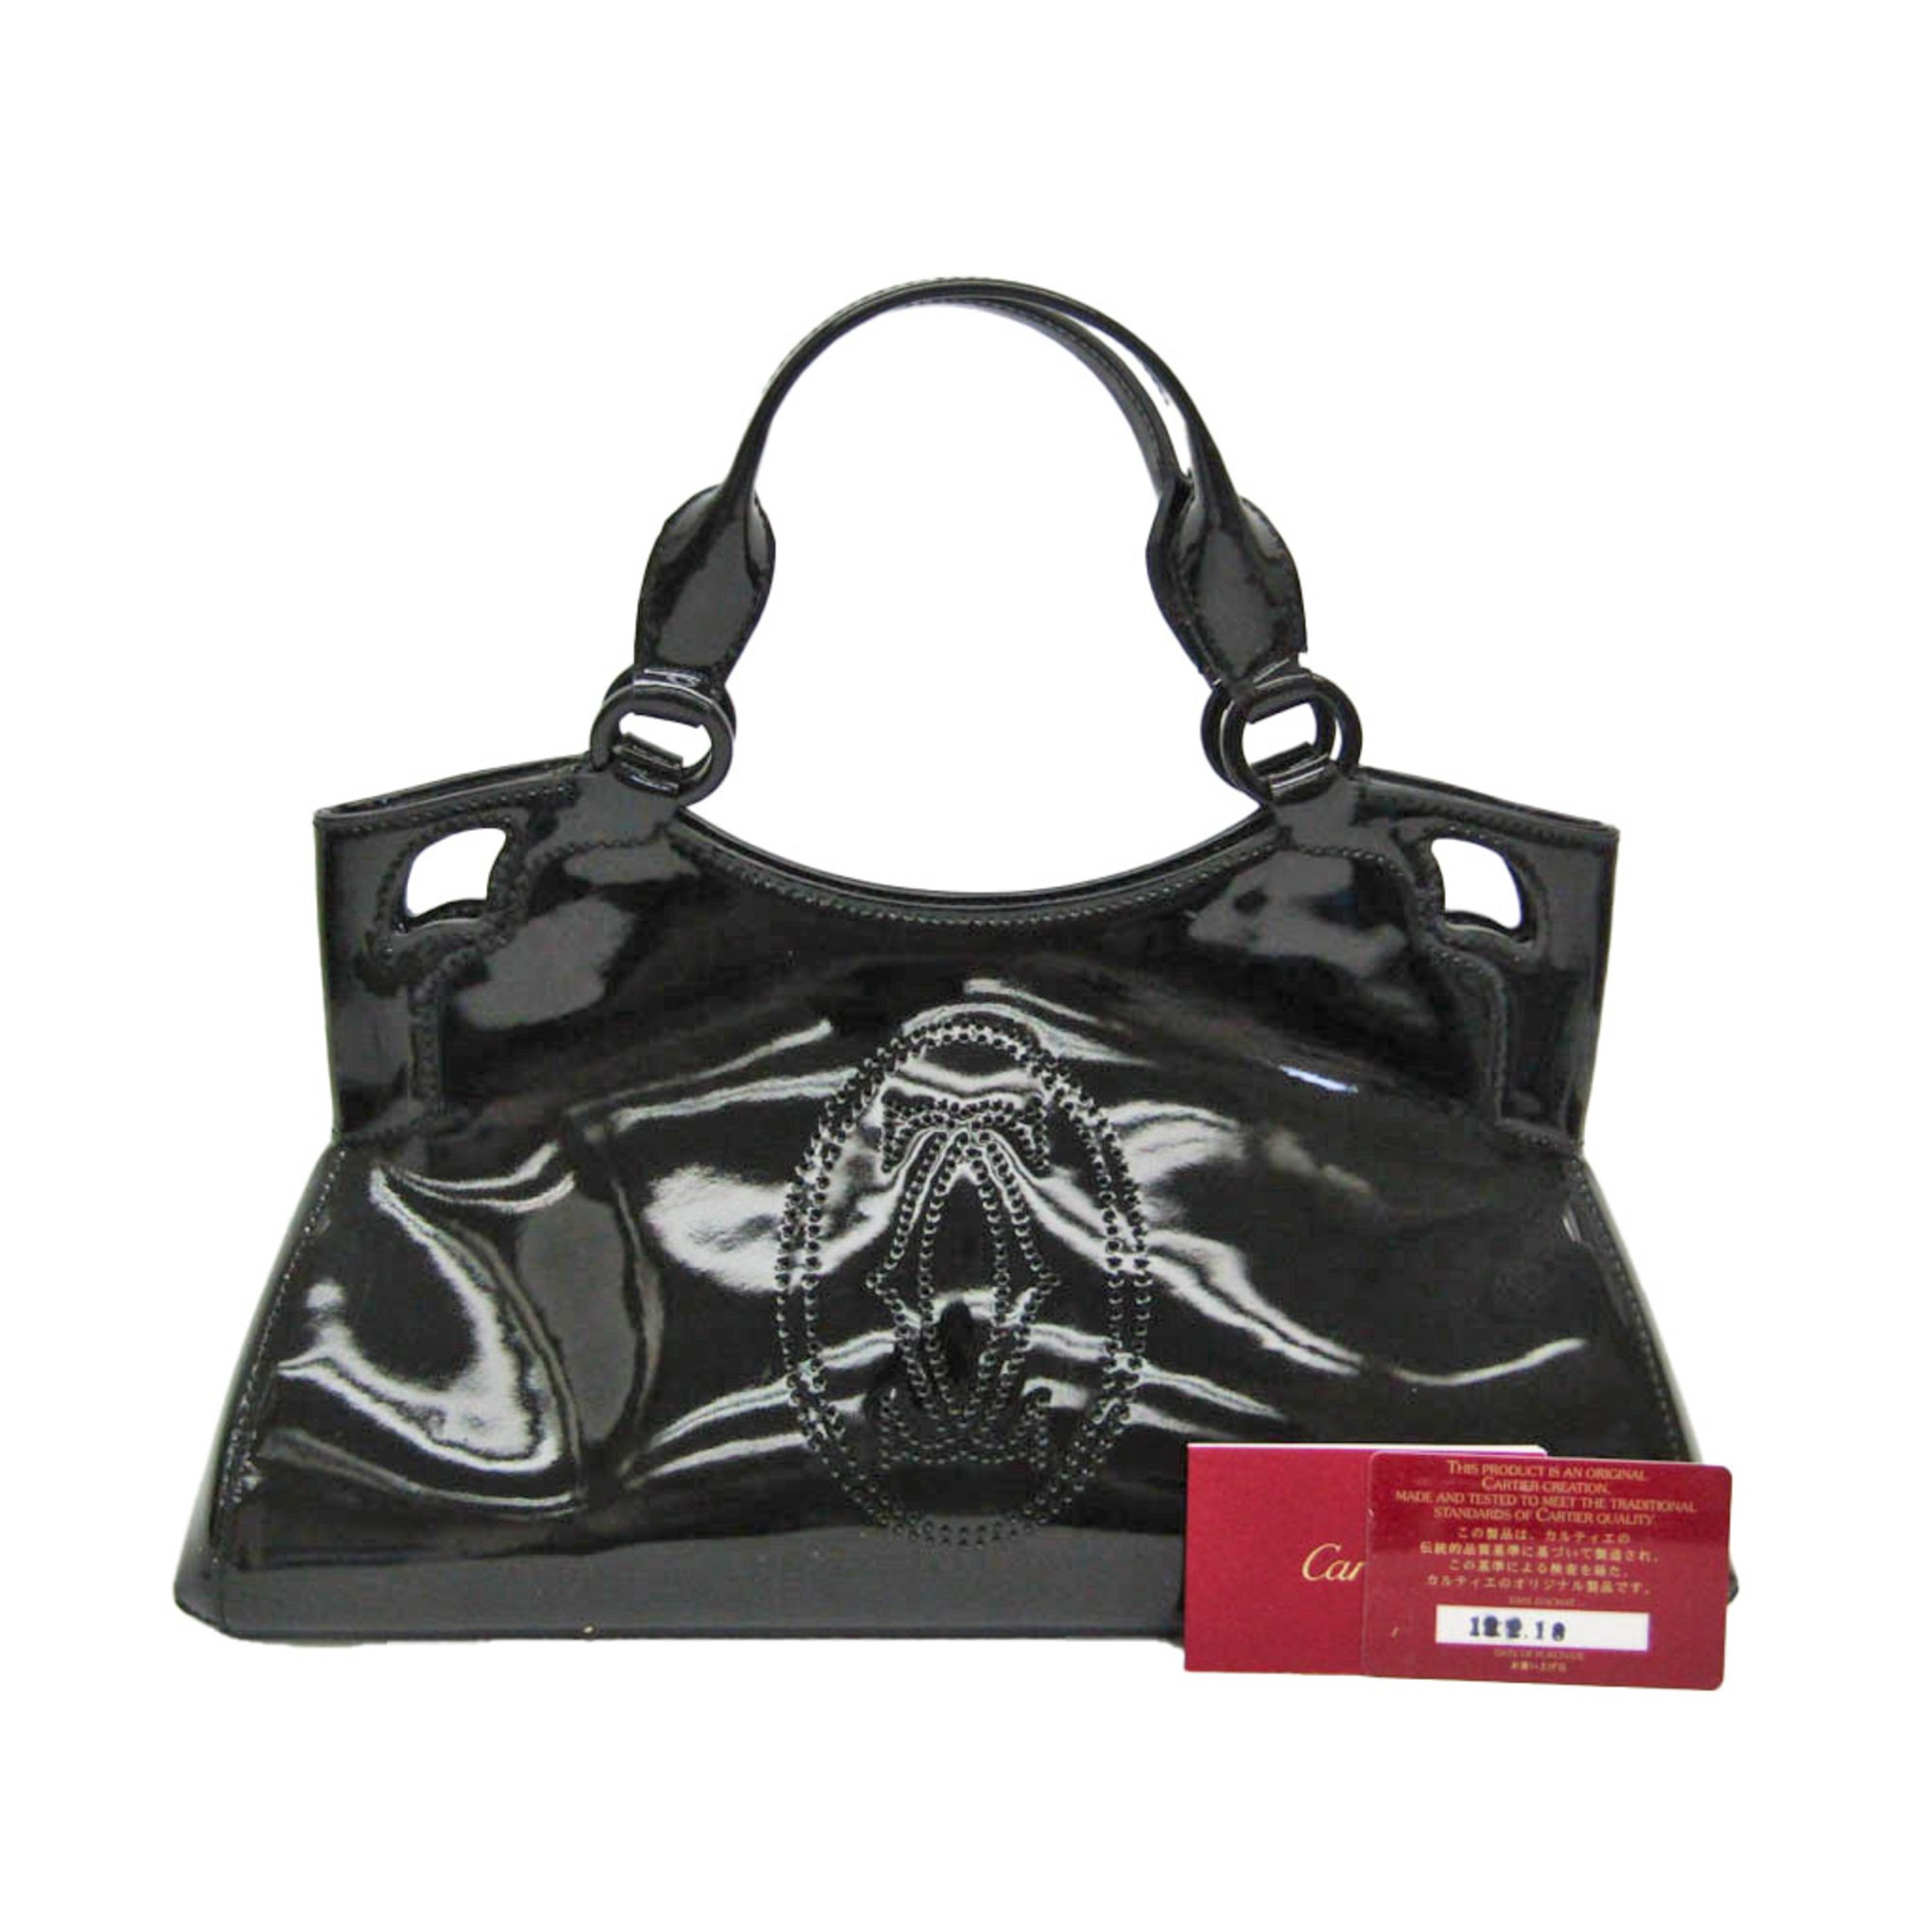 Cartier Marcello Women's Leather Handbag Black